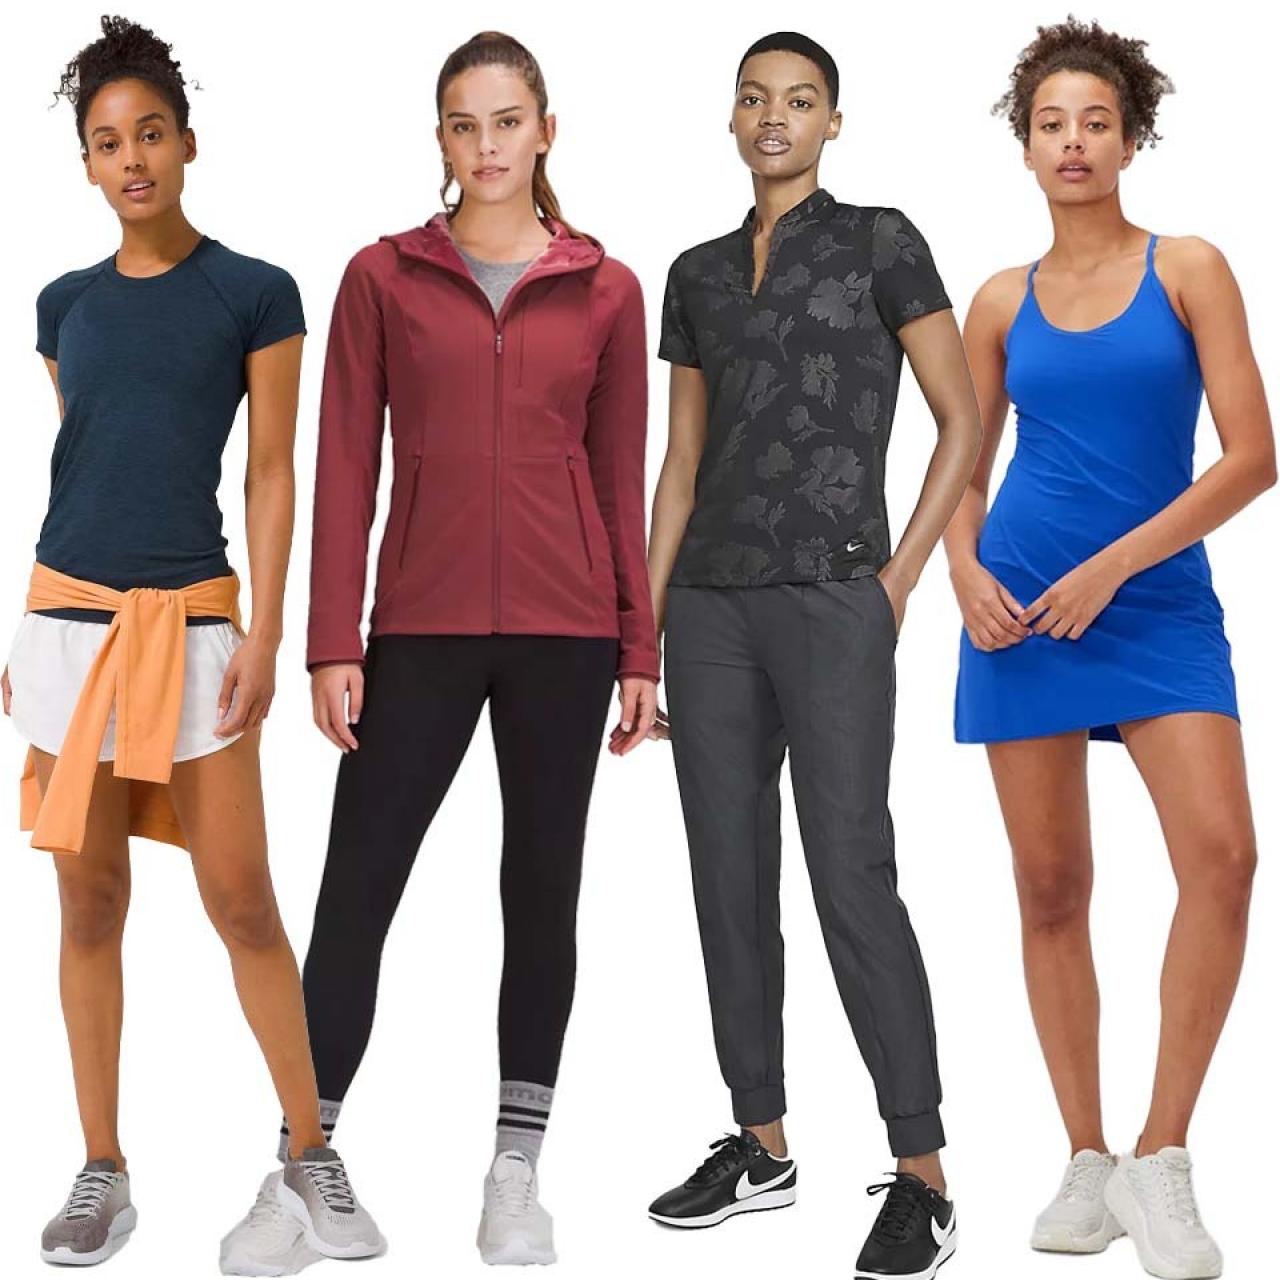 Women's Sportswear Clothing Size 38F, Athleisure wear